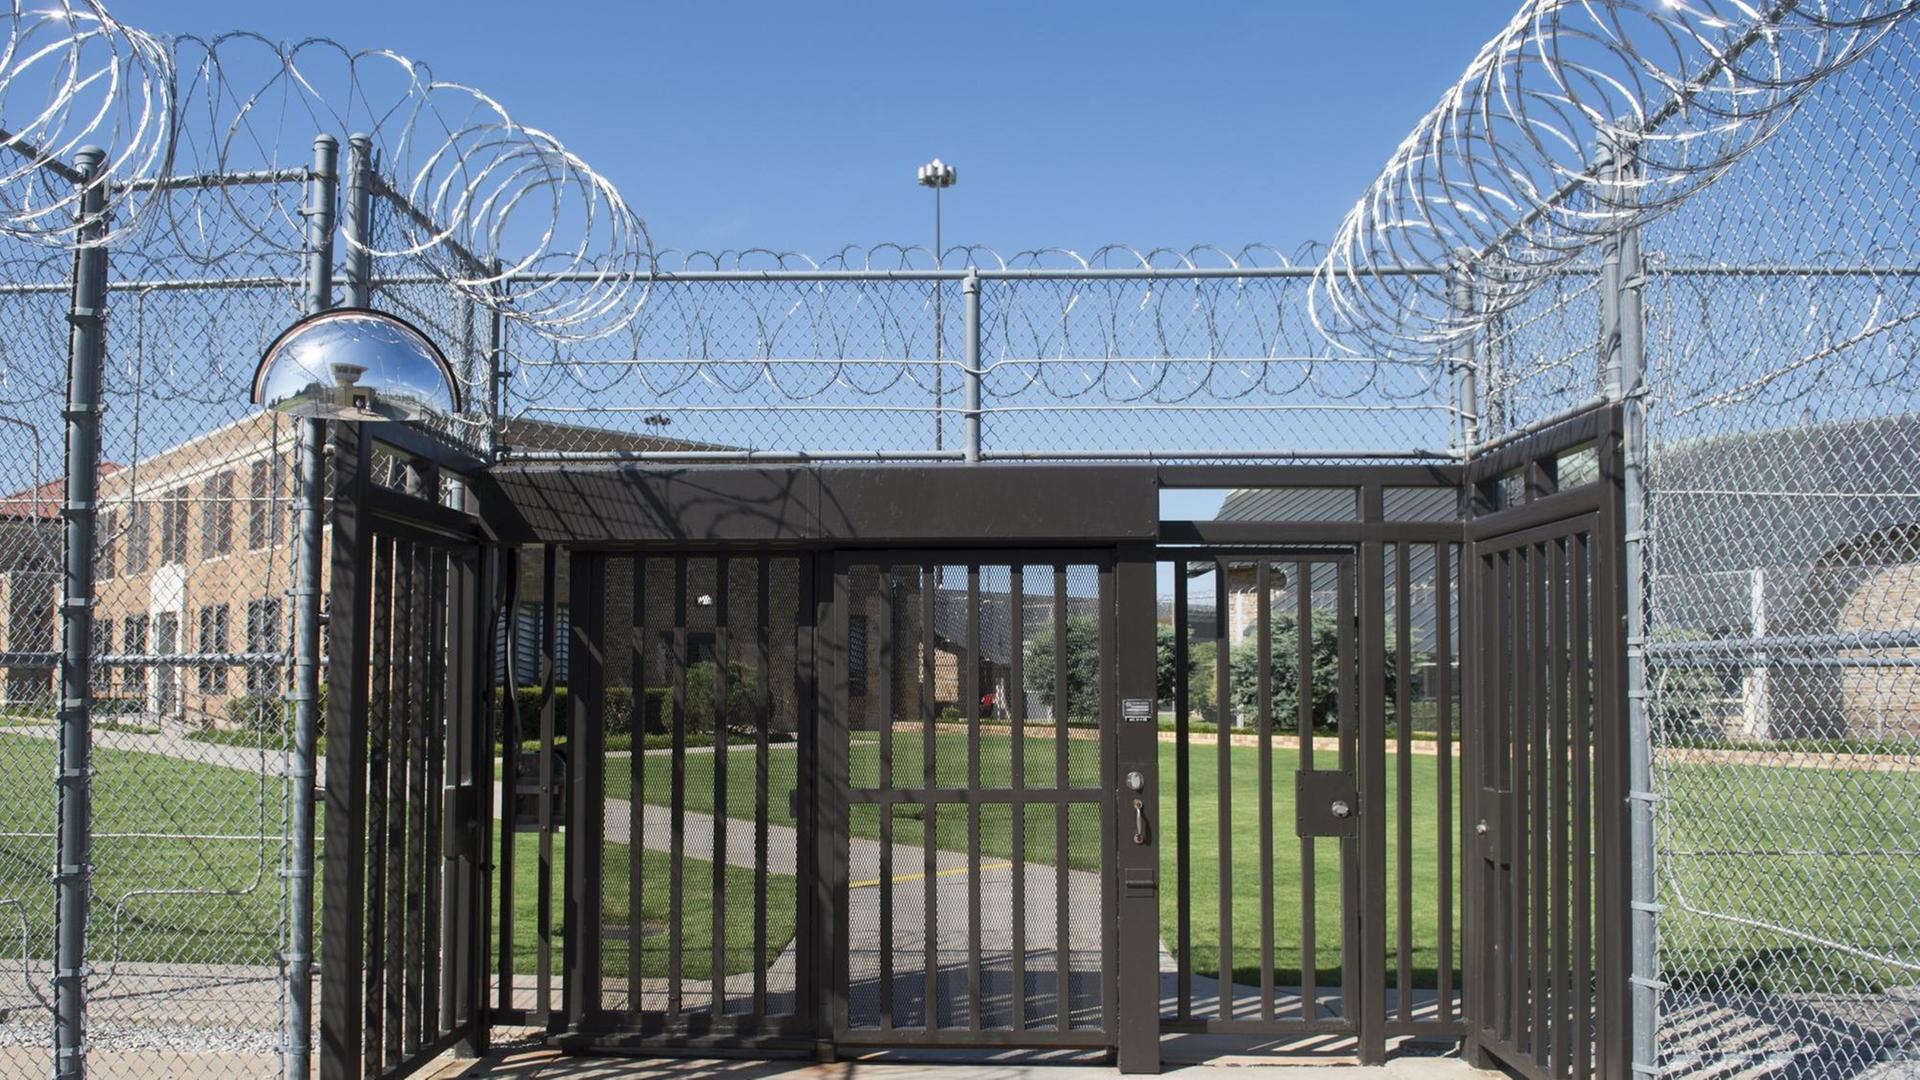 Blick auf den vergitterten Eingang eines Gefängnisses, die Zäune sind mit gerolltem Stacheldraht gesichert